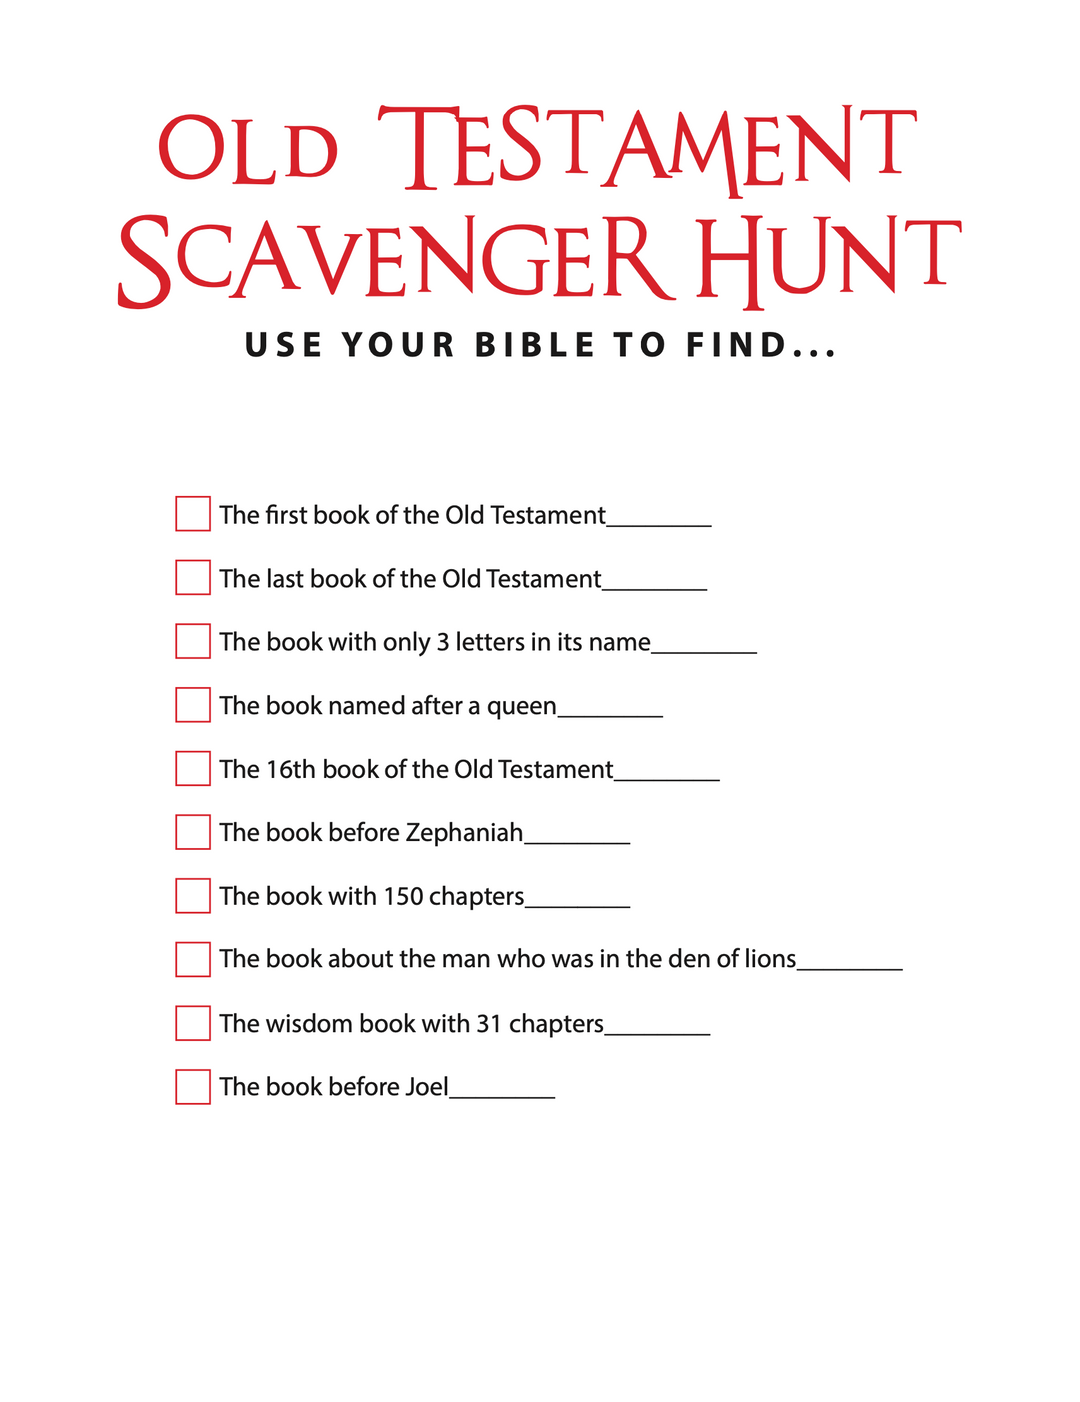 Old Testament Bible Scavenger Hunt